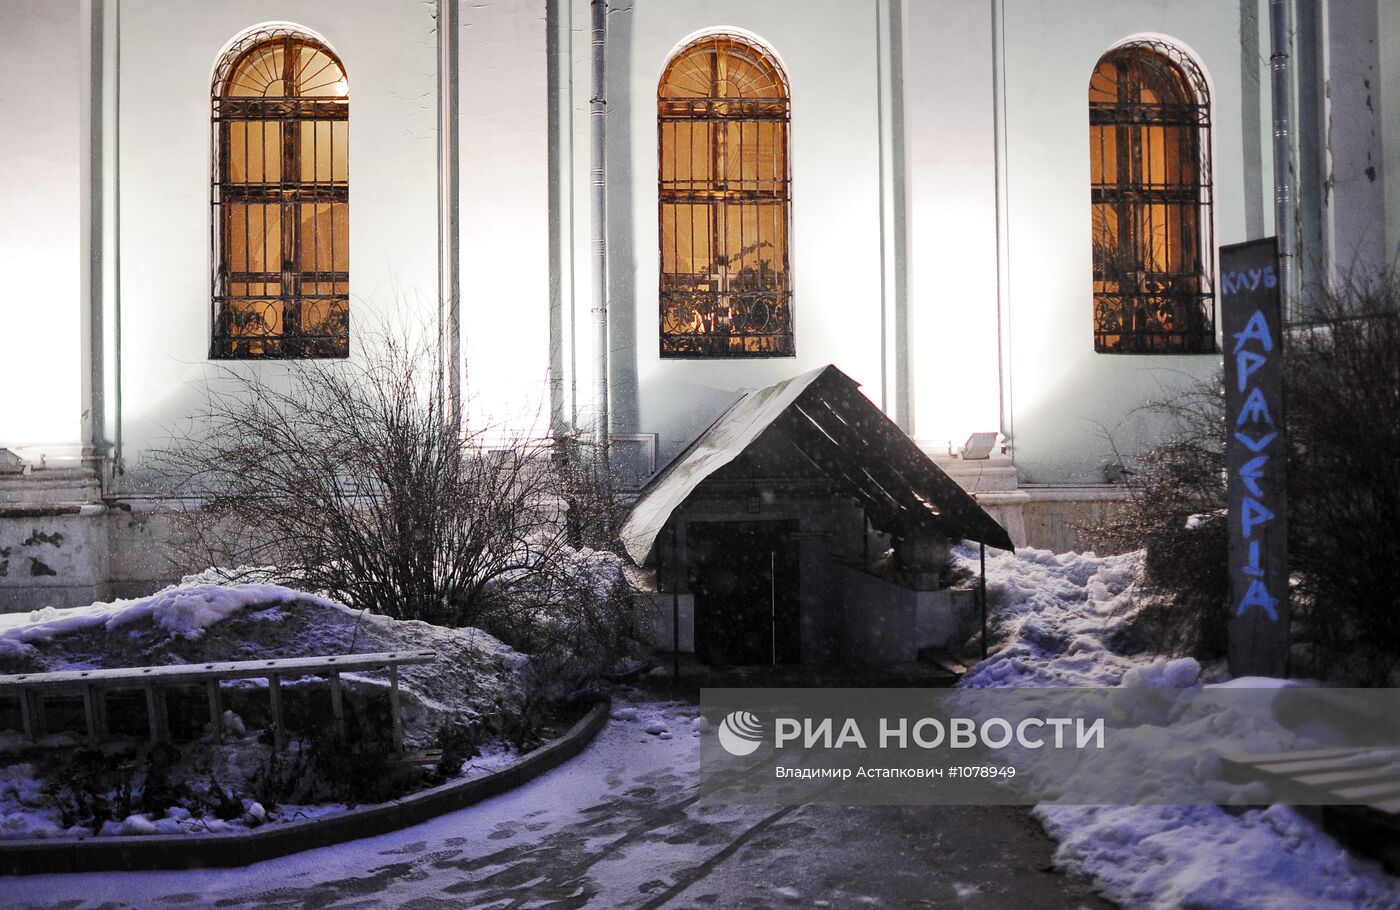 Арт-центр при московском храме святителя Николая на Трех горах